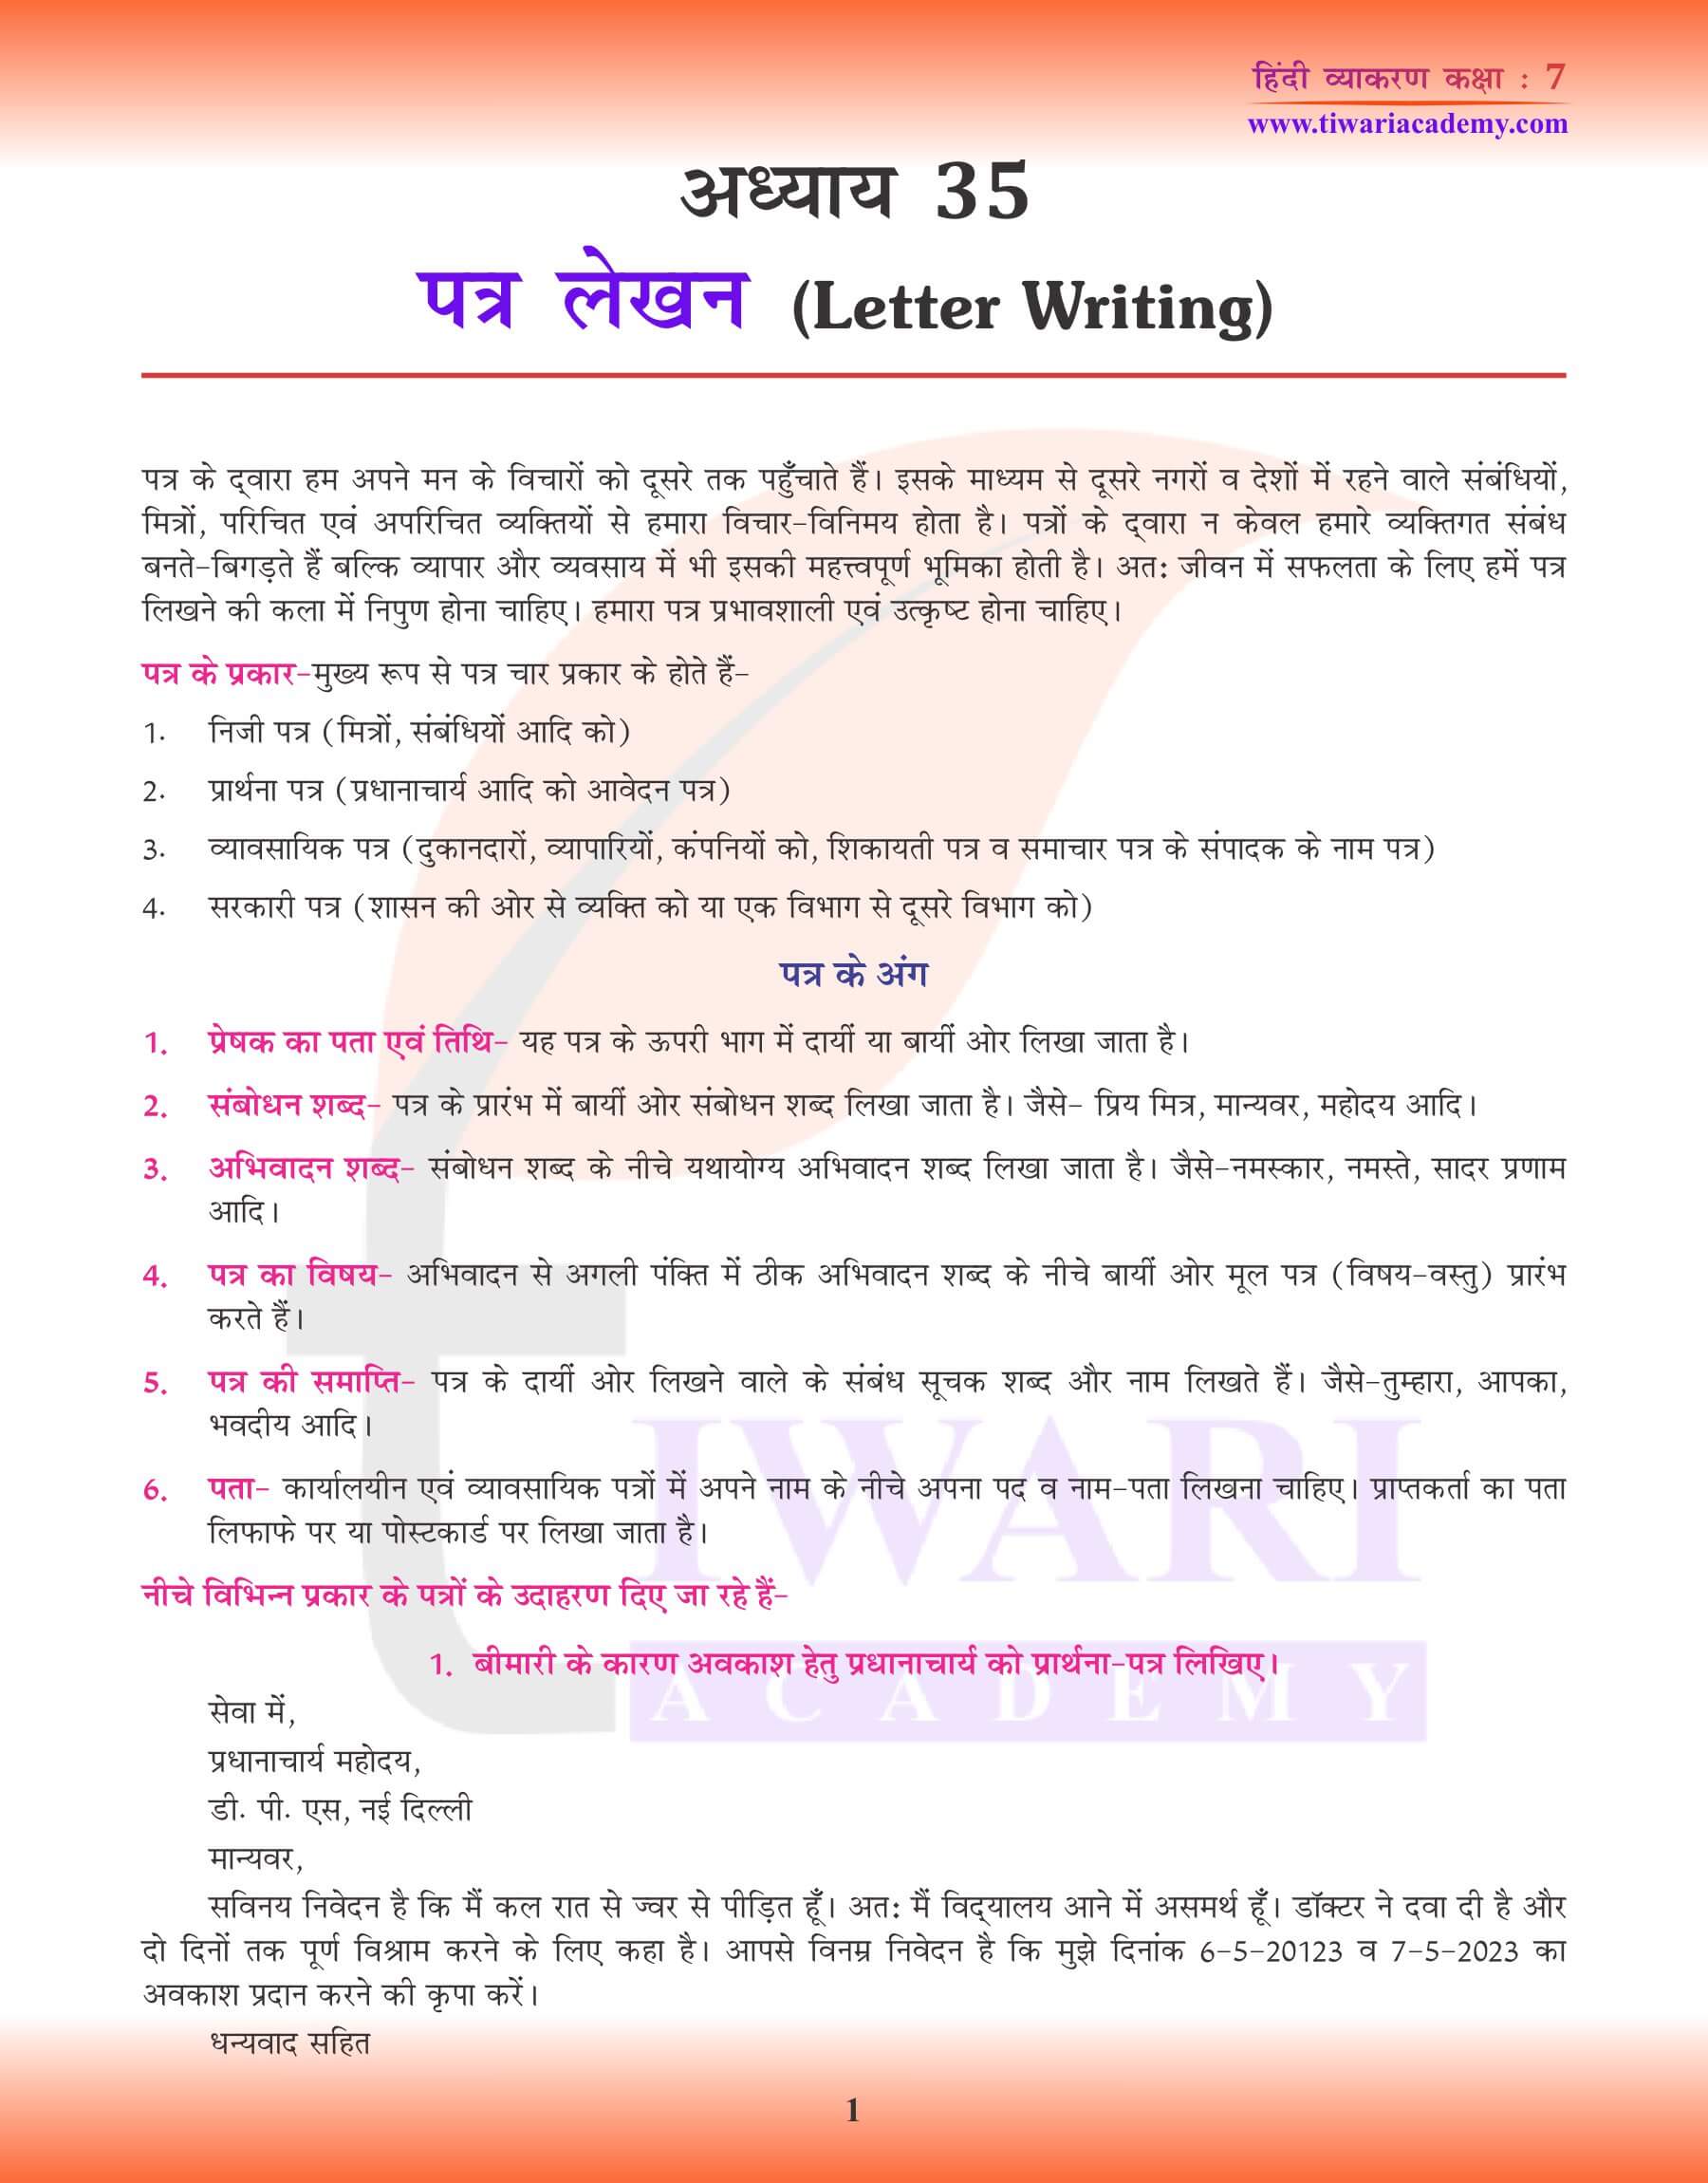 हिंदी व्याकरण पत्र लेखन